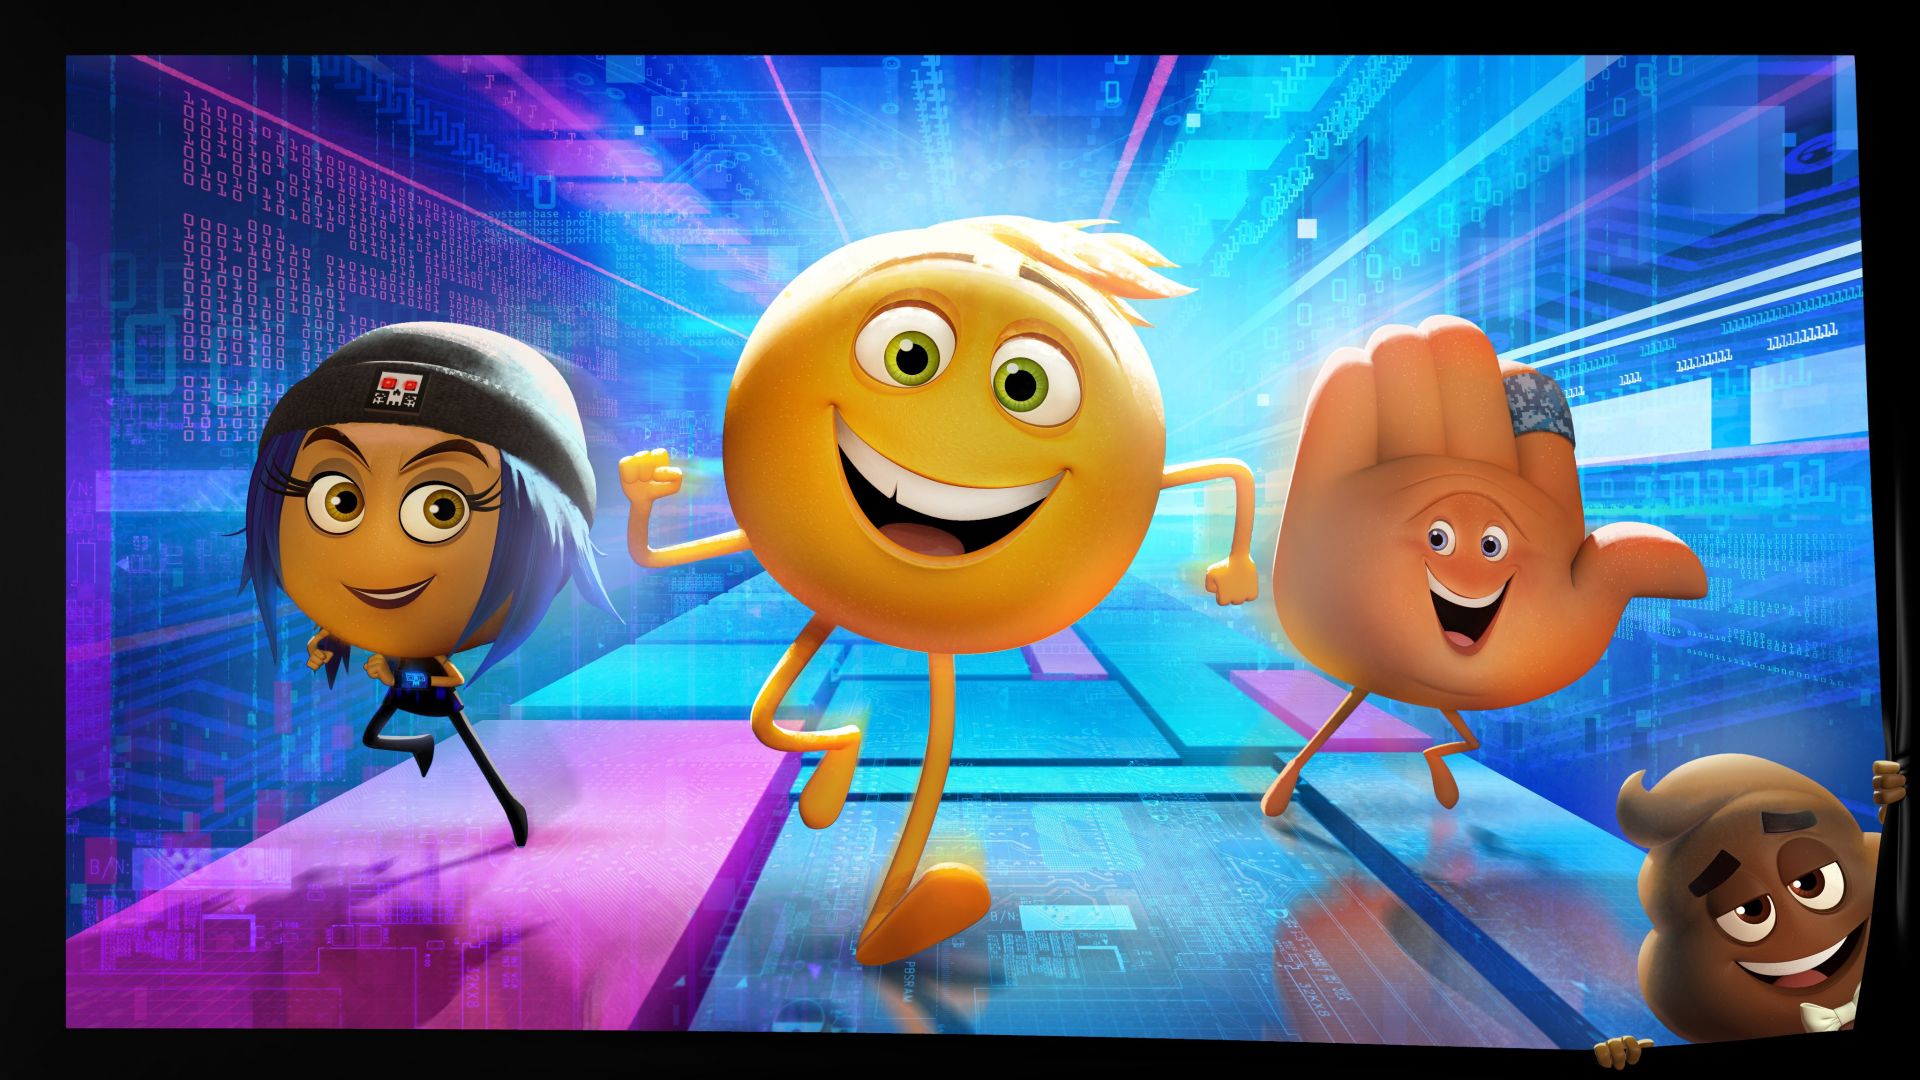 Эмоджи, смайлик, лучшие мультфильмы, Emojimovie: Express Yourself, smiley, best animation movies (horizontal)